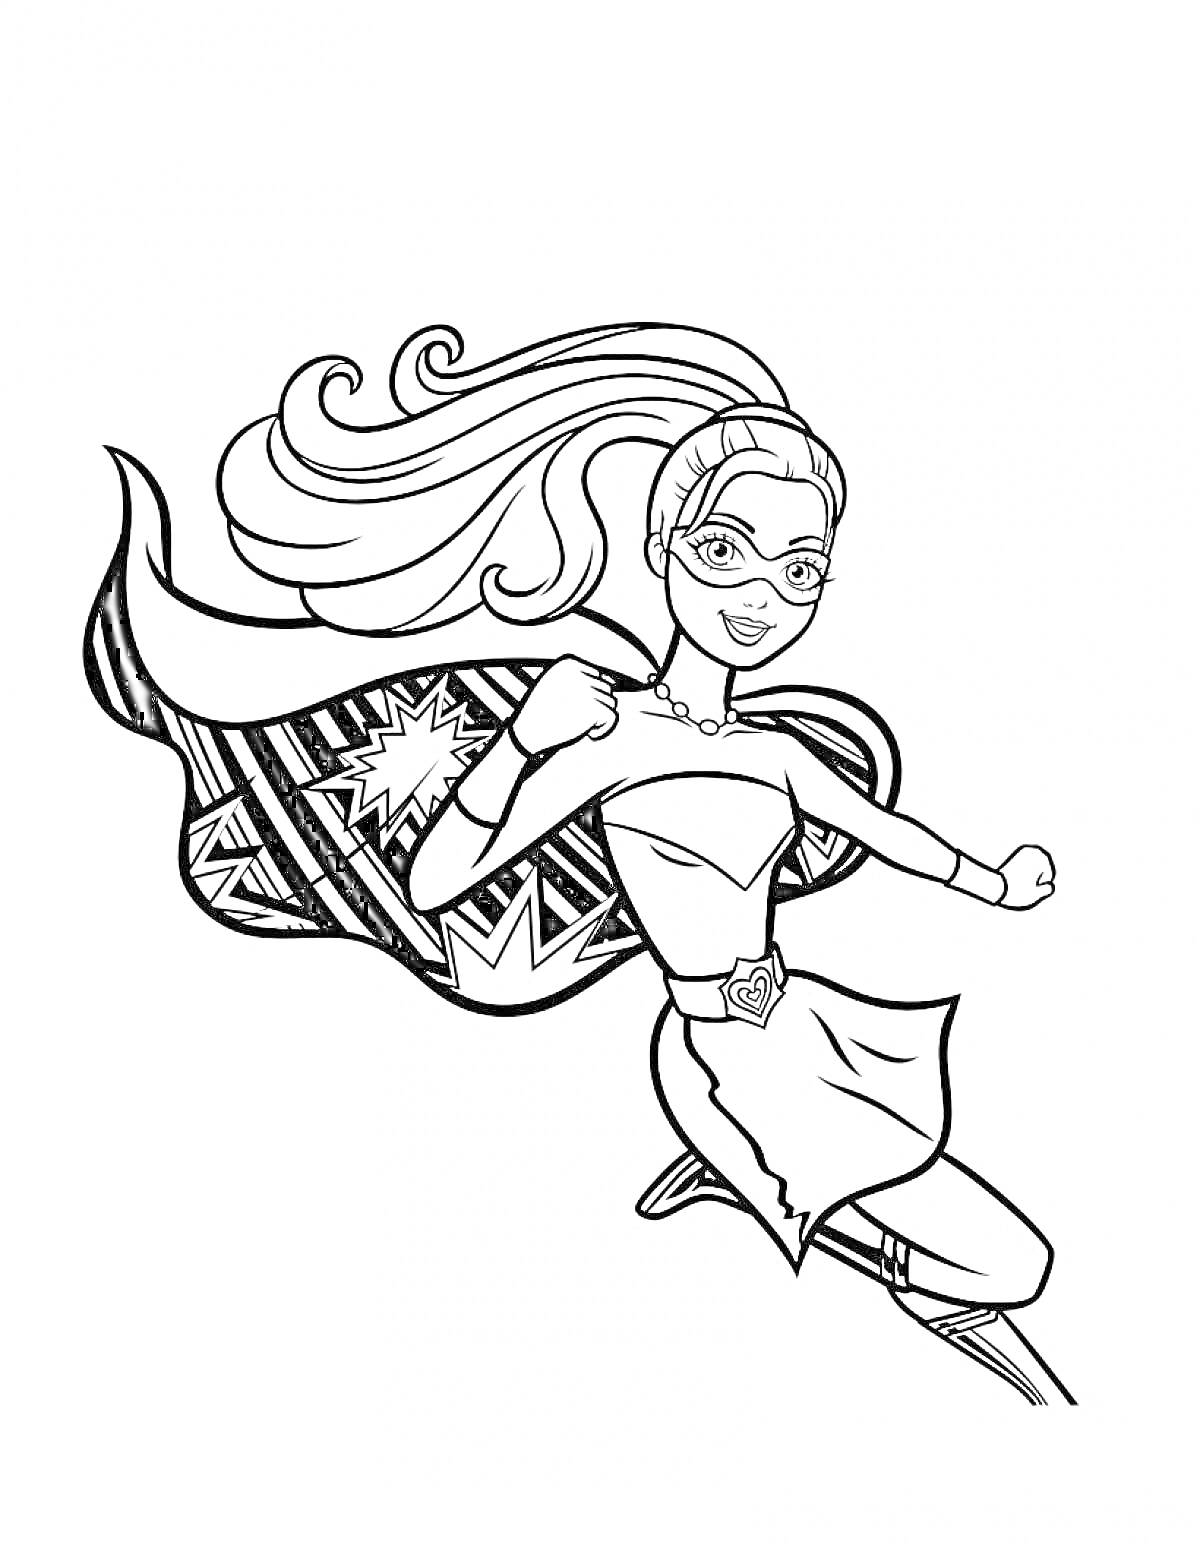 Раскраска Барби Супер Принцесса в полете с развевающимся плащом и маской